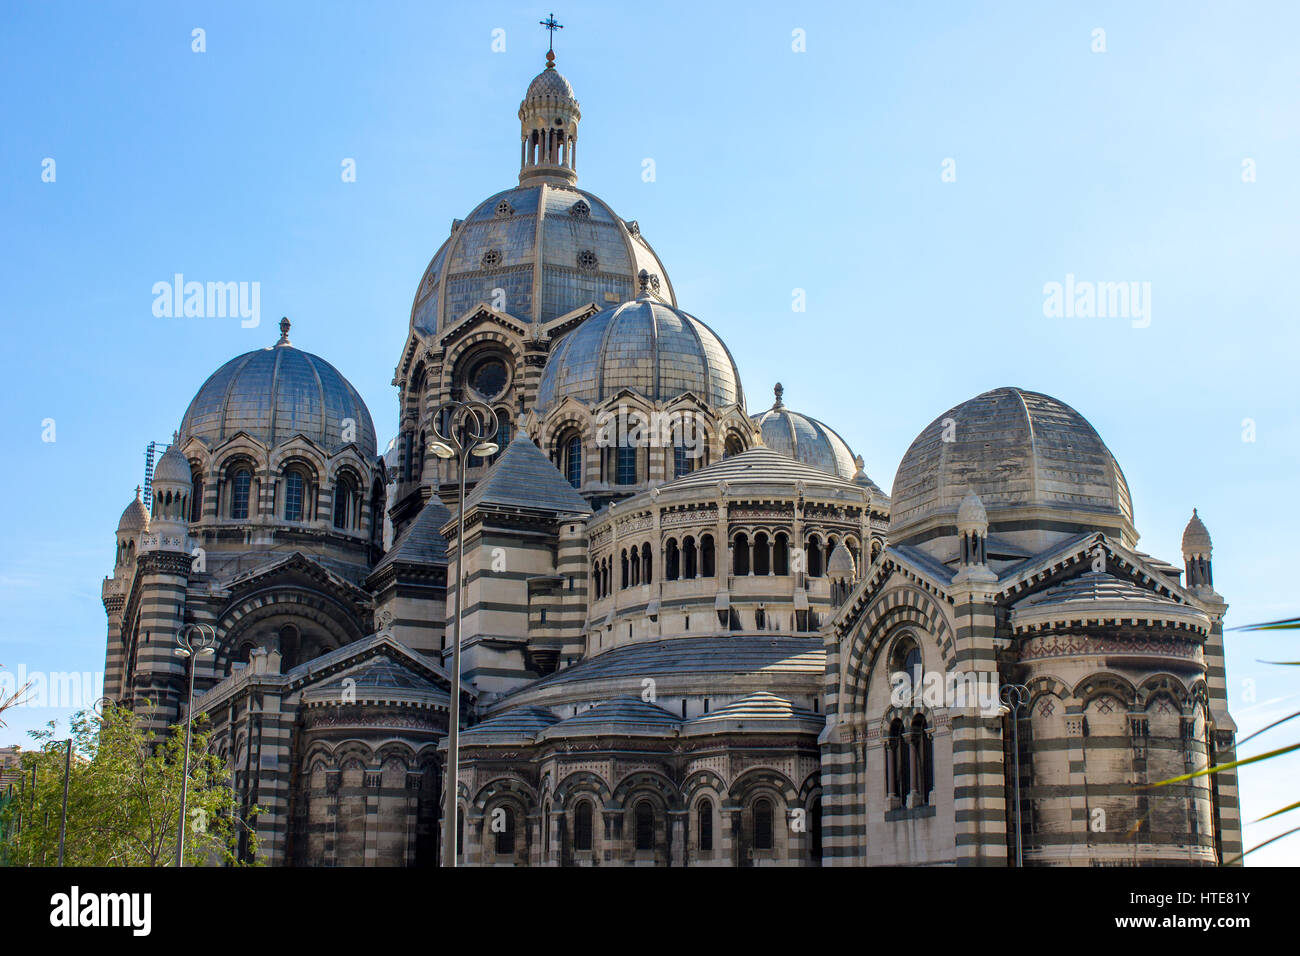 Marseille cathédrale (Cathédrale Sainte-Marie-Majeure ou cathédrale de la major), une cathédrale catholique romaine et un monument national de la France. Banque D'Images